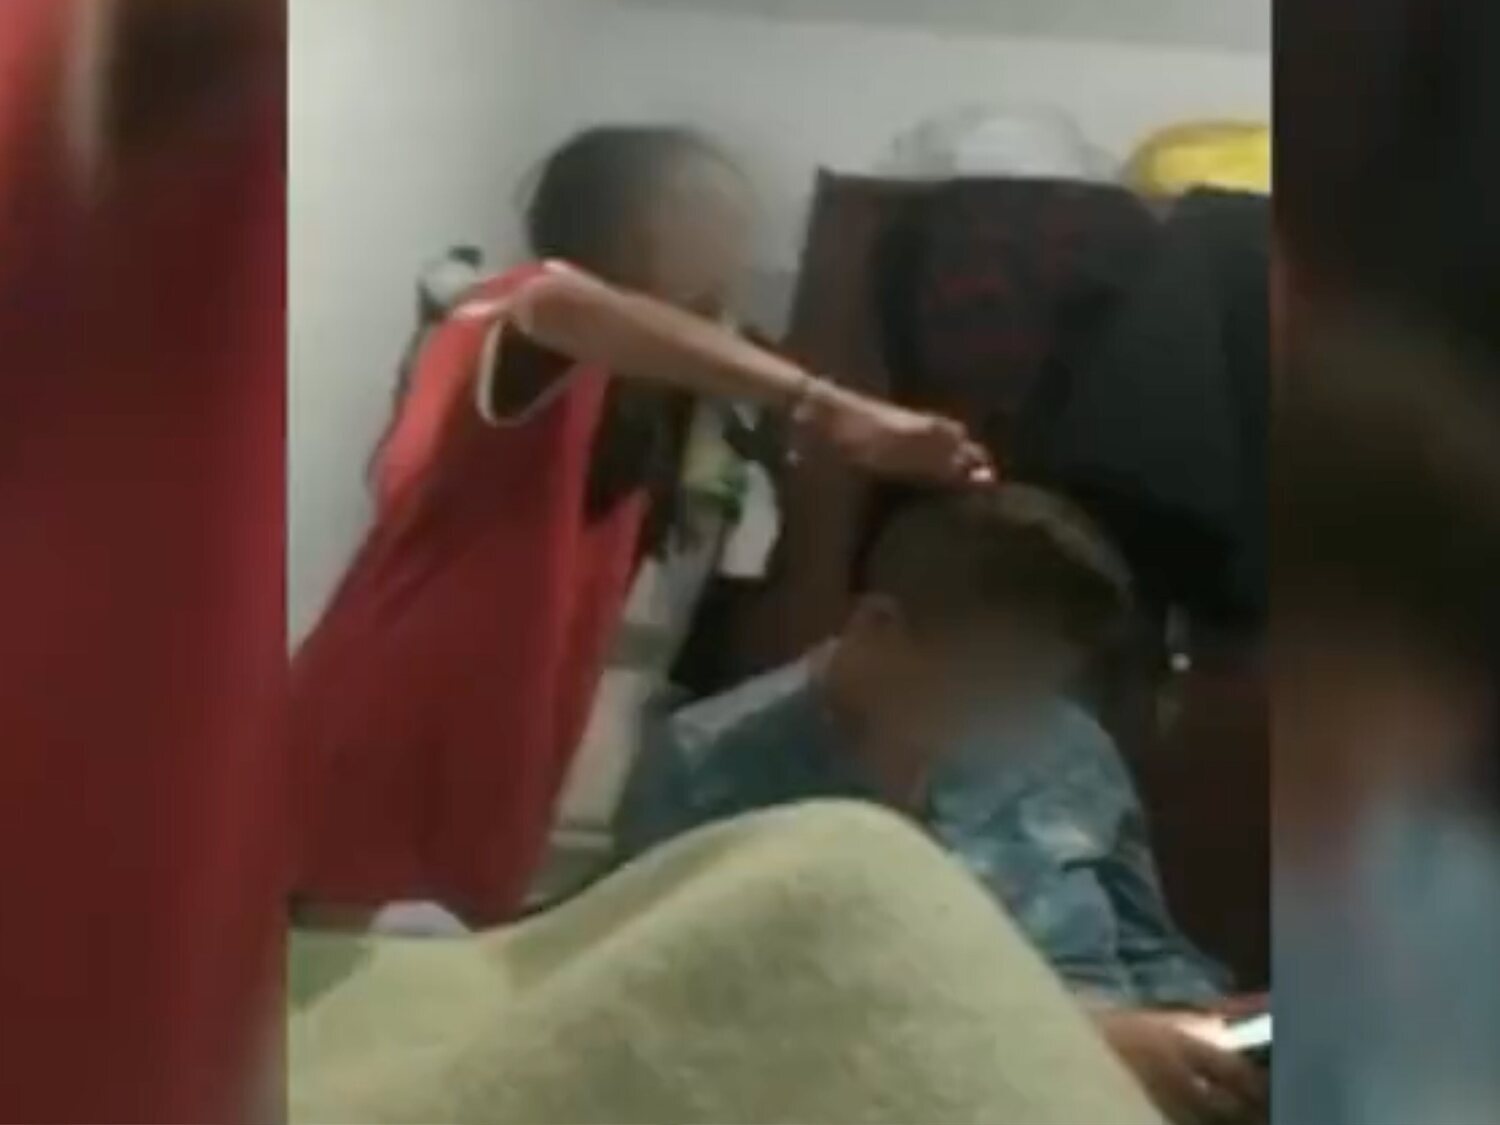 Dos adolescentes de 15 años, queman con un mechero y rapan a una mujer discapacitada de 65 años en Cádiz